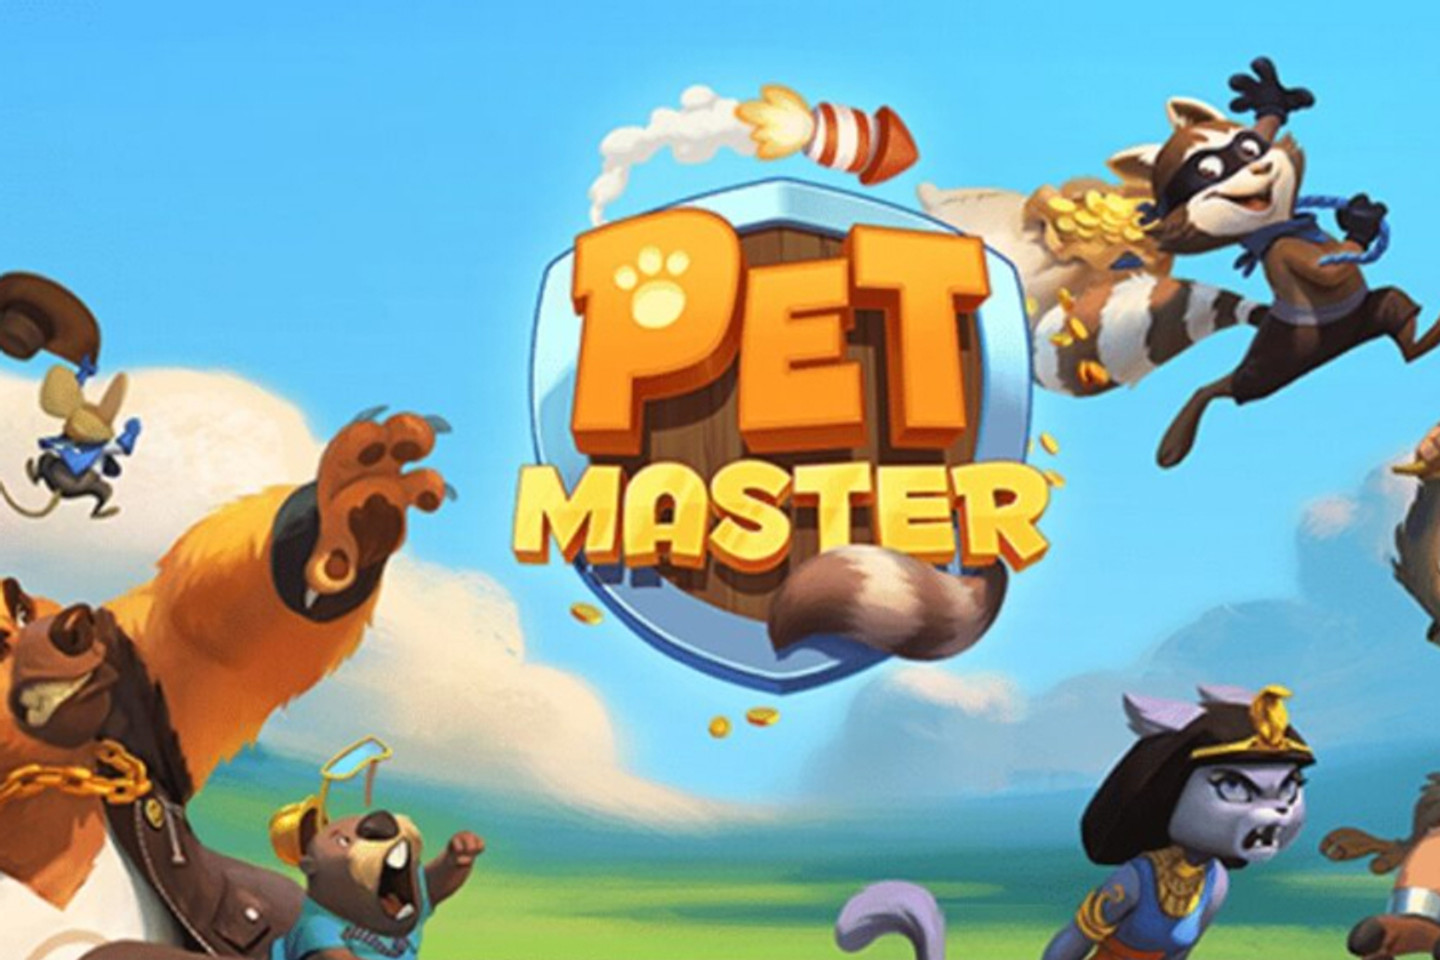 Tous les tours et liens gratuits du jour sur Pet Master